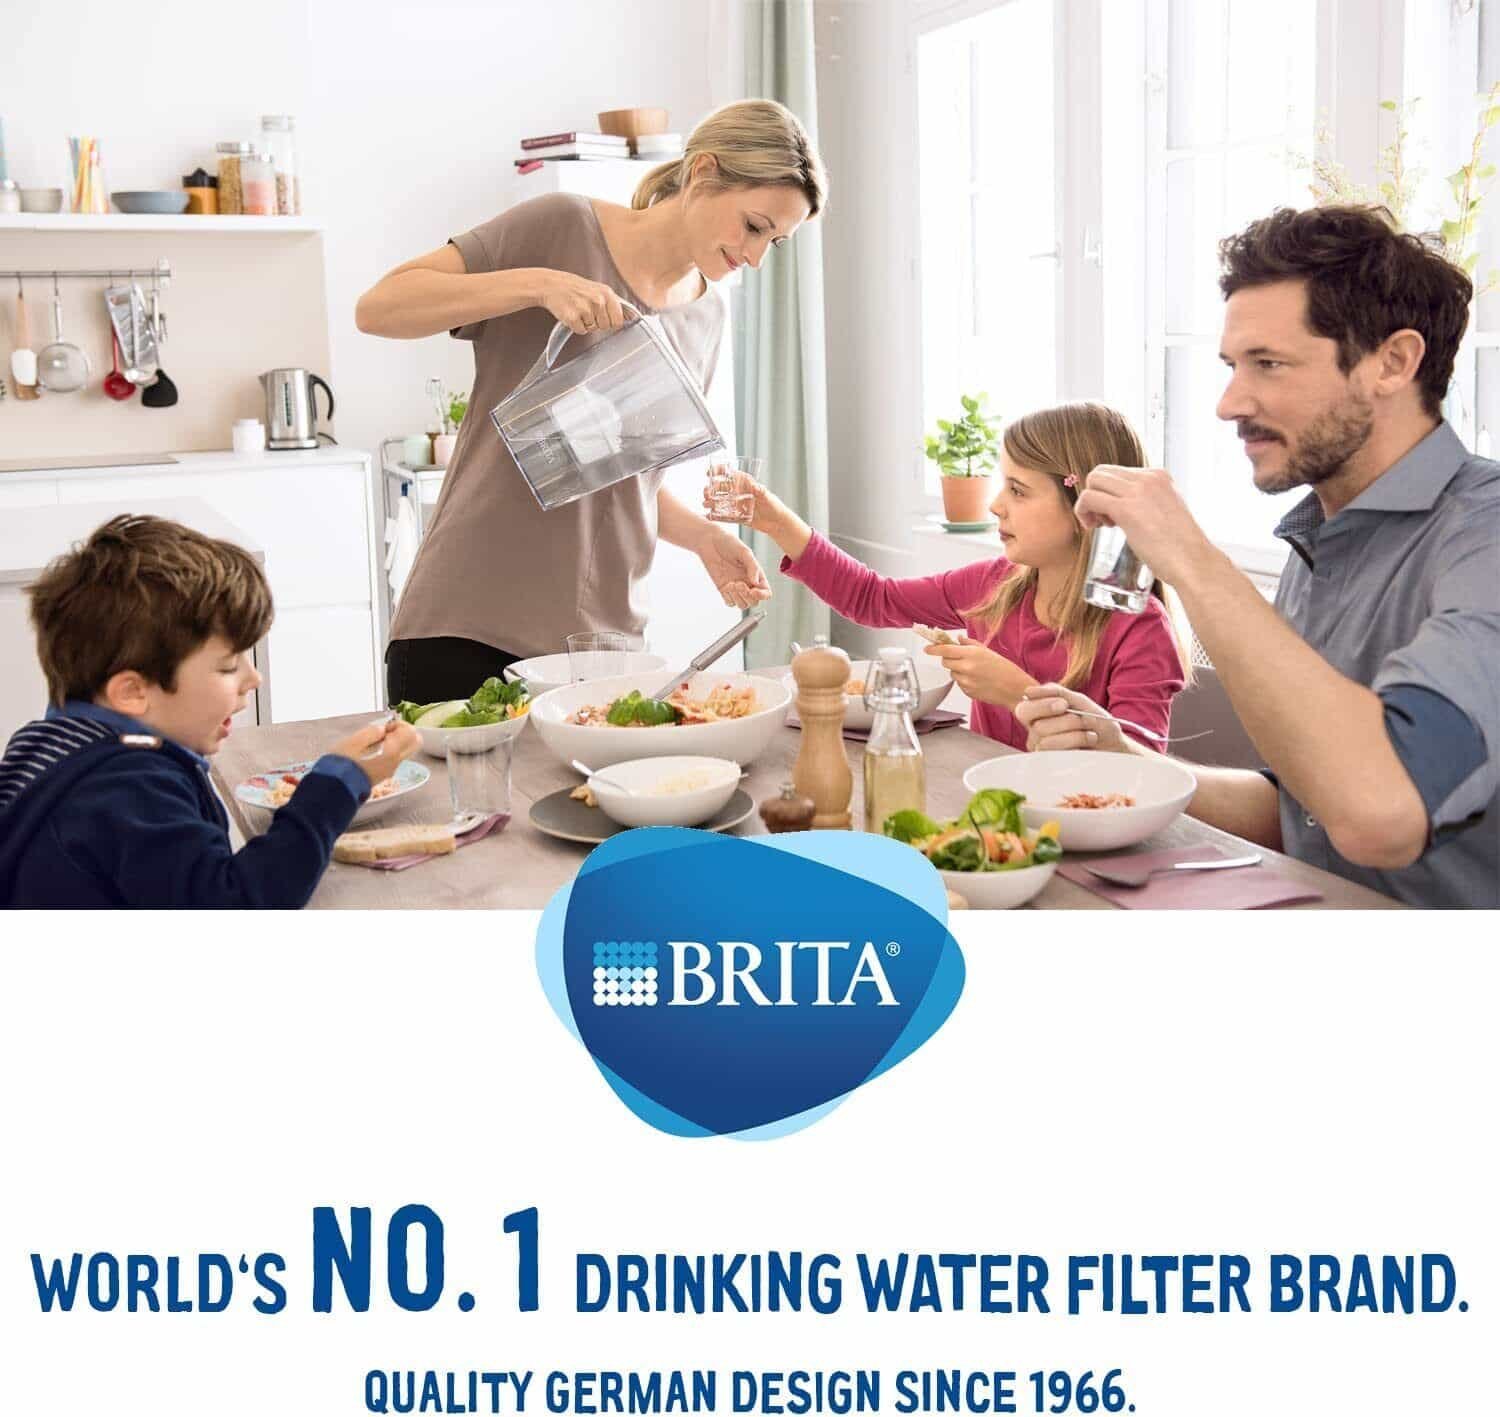 BRITA Marella XL 3.5 L starter-pack + 2 Maxtra PRO filters (blue